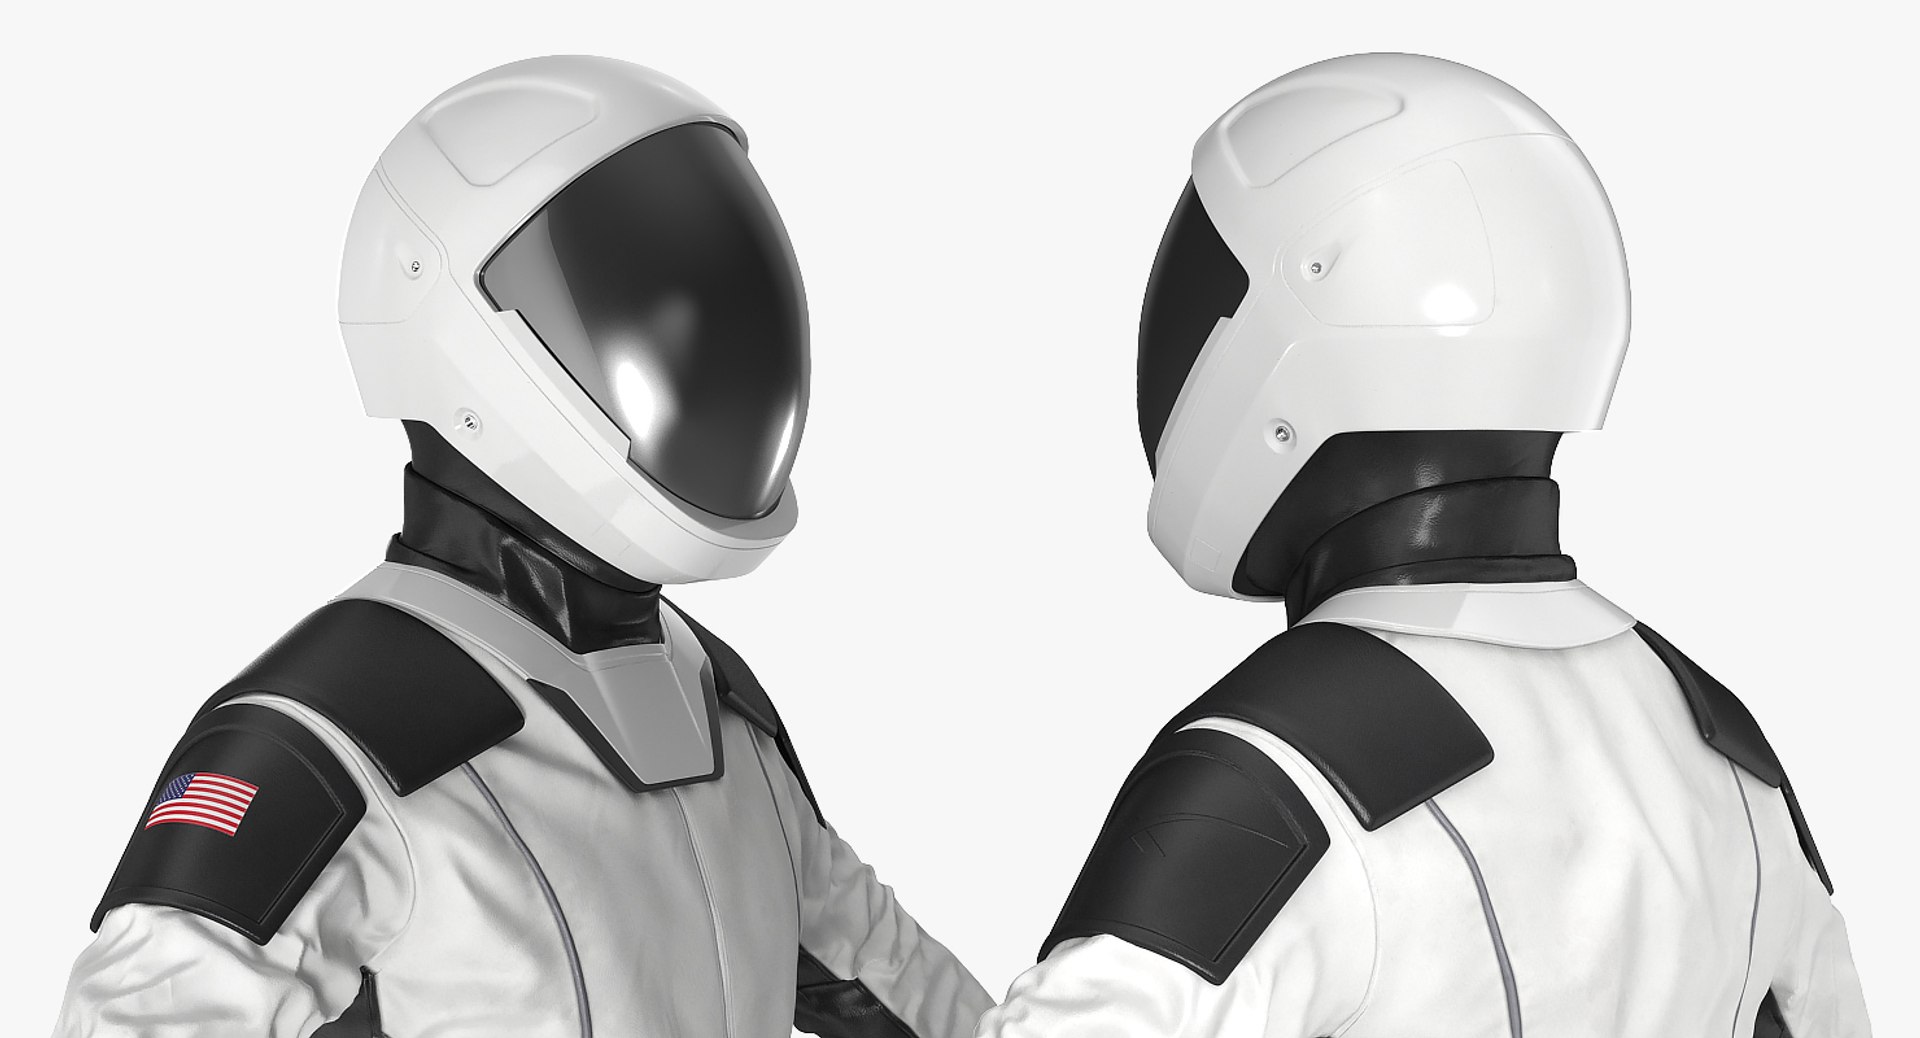 Futuristic Astronaut Space Suit 3D Model - TurboSquid 1411004